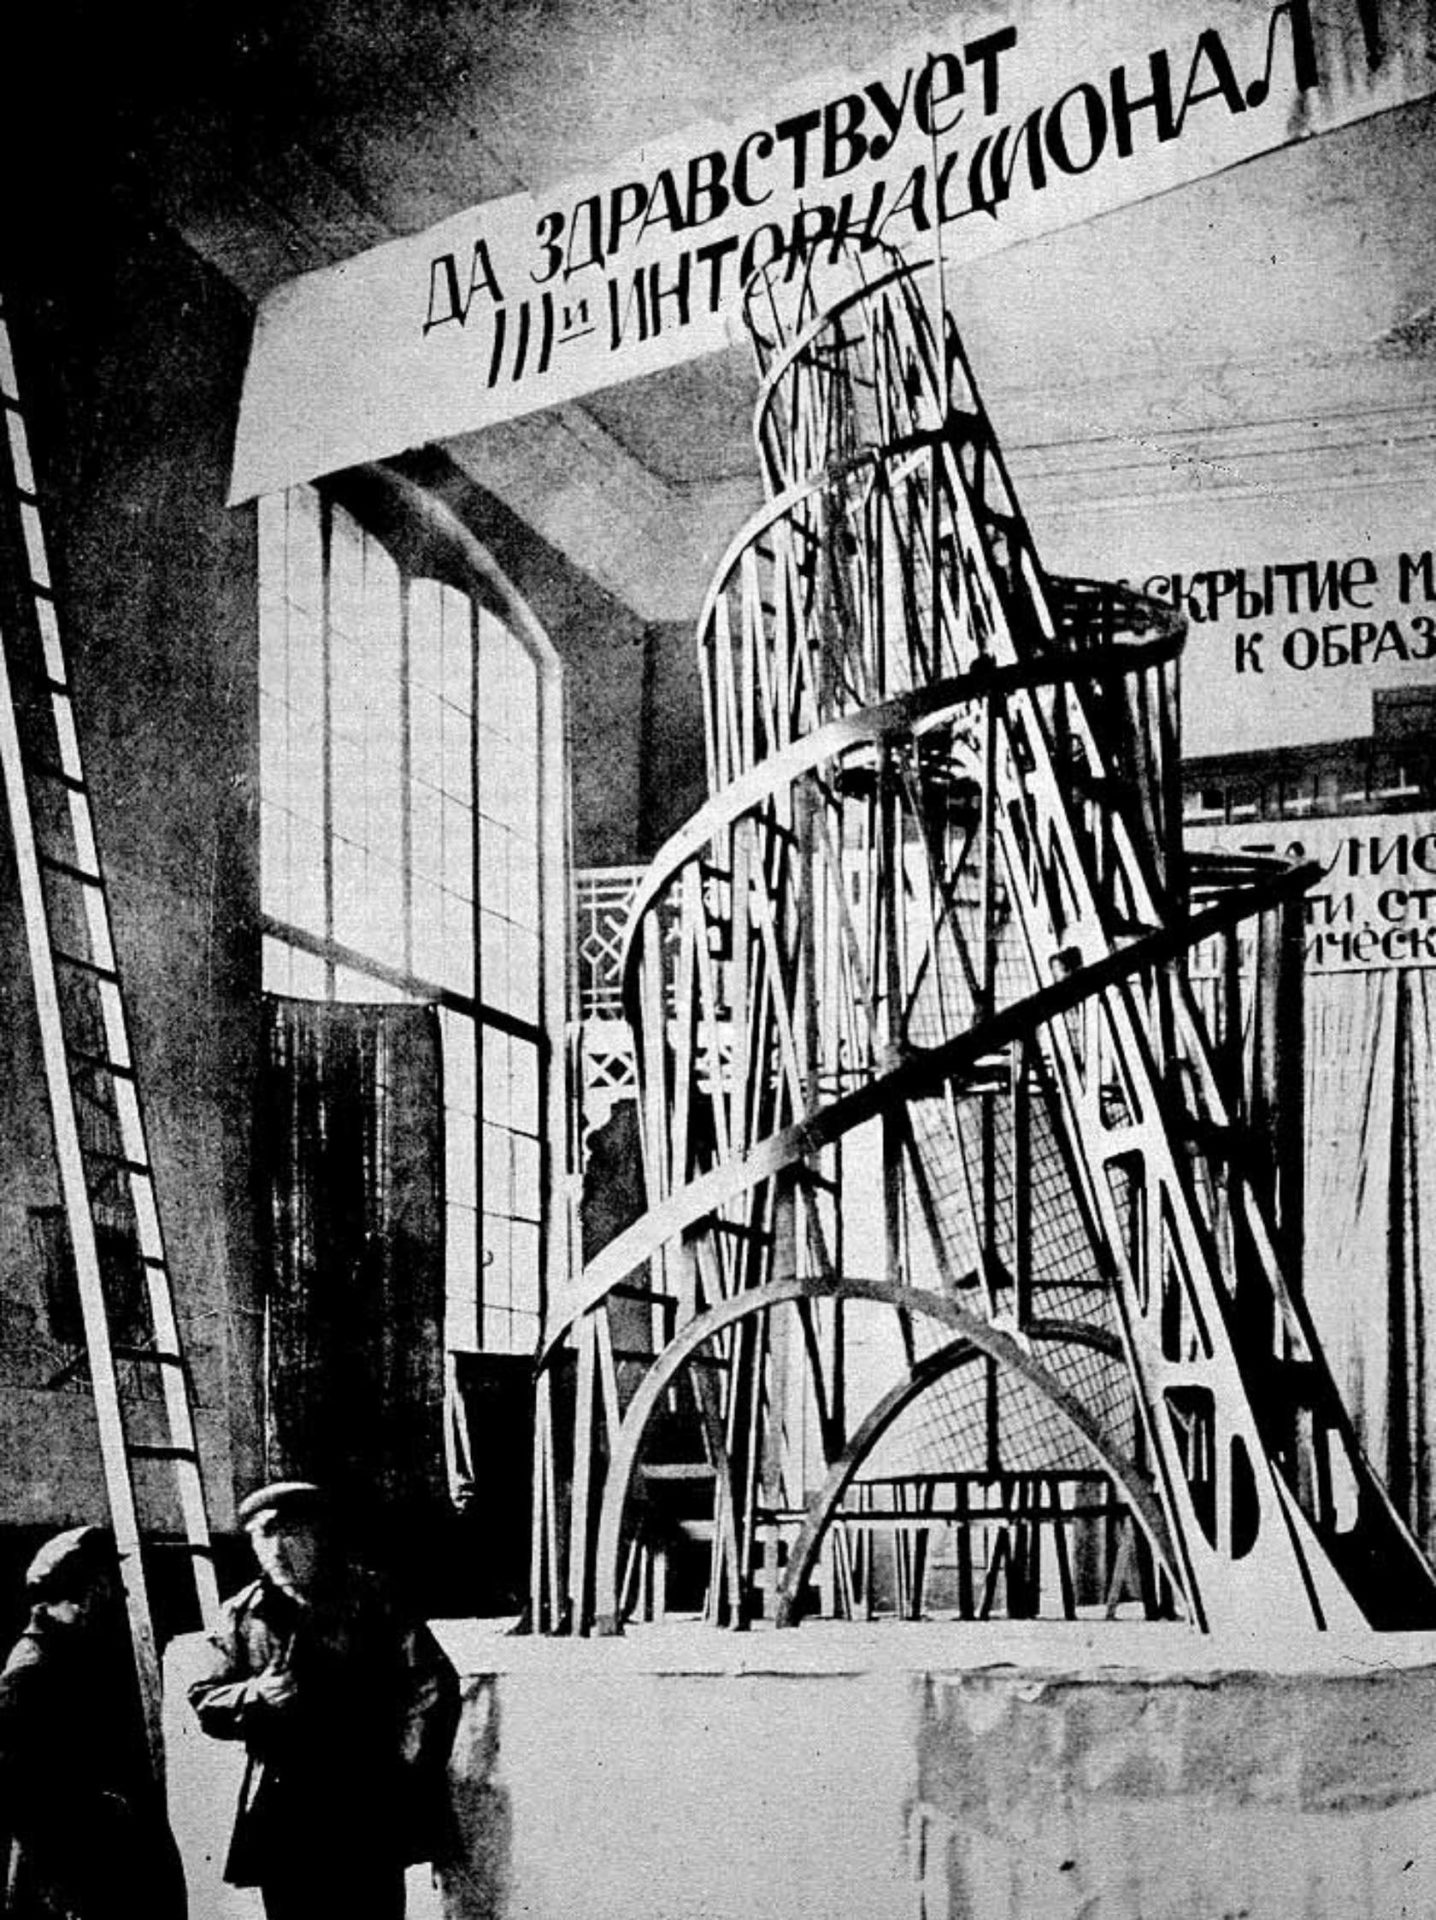 建築の歴史の教科書を開けば載っている「第三インターナショナル記念塔」。
この建築は1919年に構想された高さが400ｍもある建物である。
しかし当時の技術では建設は困難となり未完で終わってしまった。
なぜ建てられなかったのか、どうすれば建てられるのかを研究する。